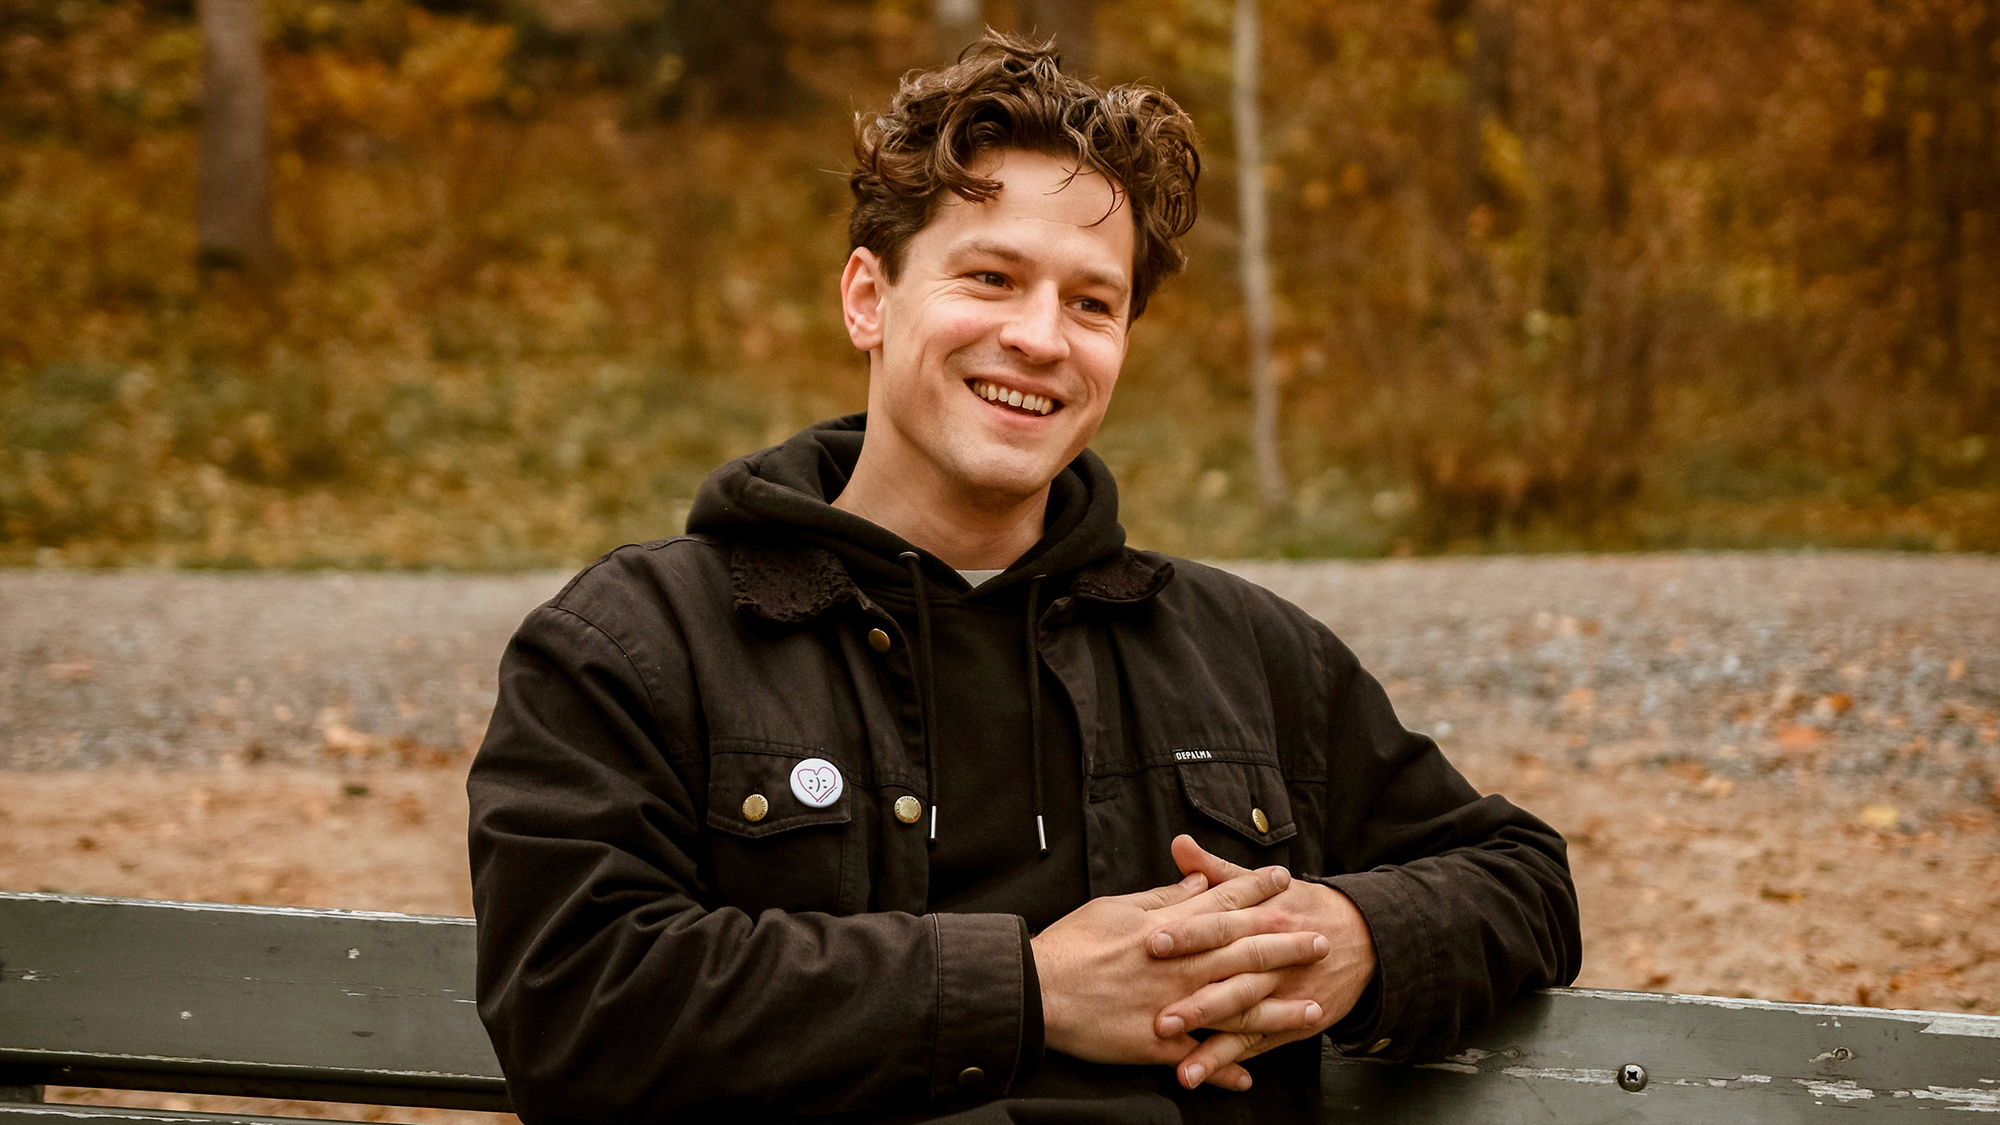 Porträtt av Henrik Wahlström. Han sitter utomhus på en träbänk, blickar åt sidan och ler. Iklädd svart jacka och 